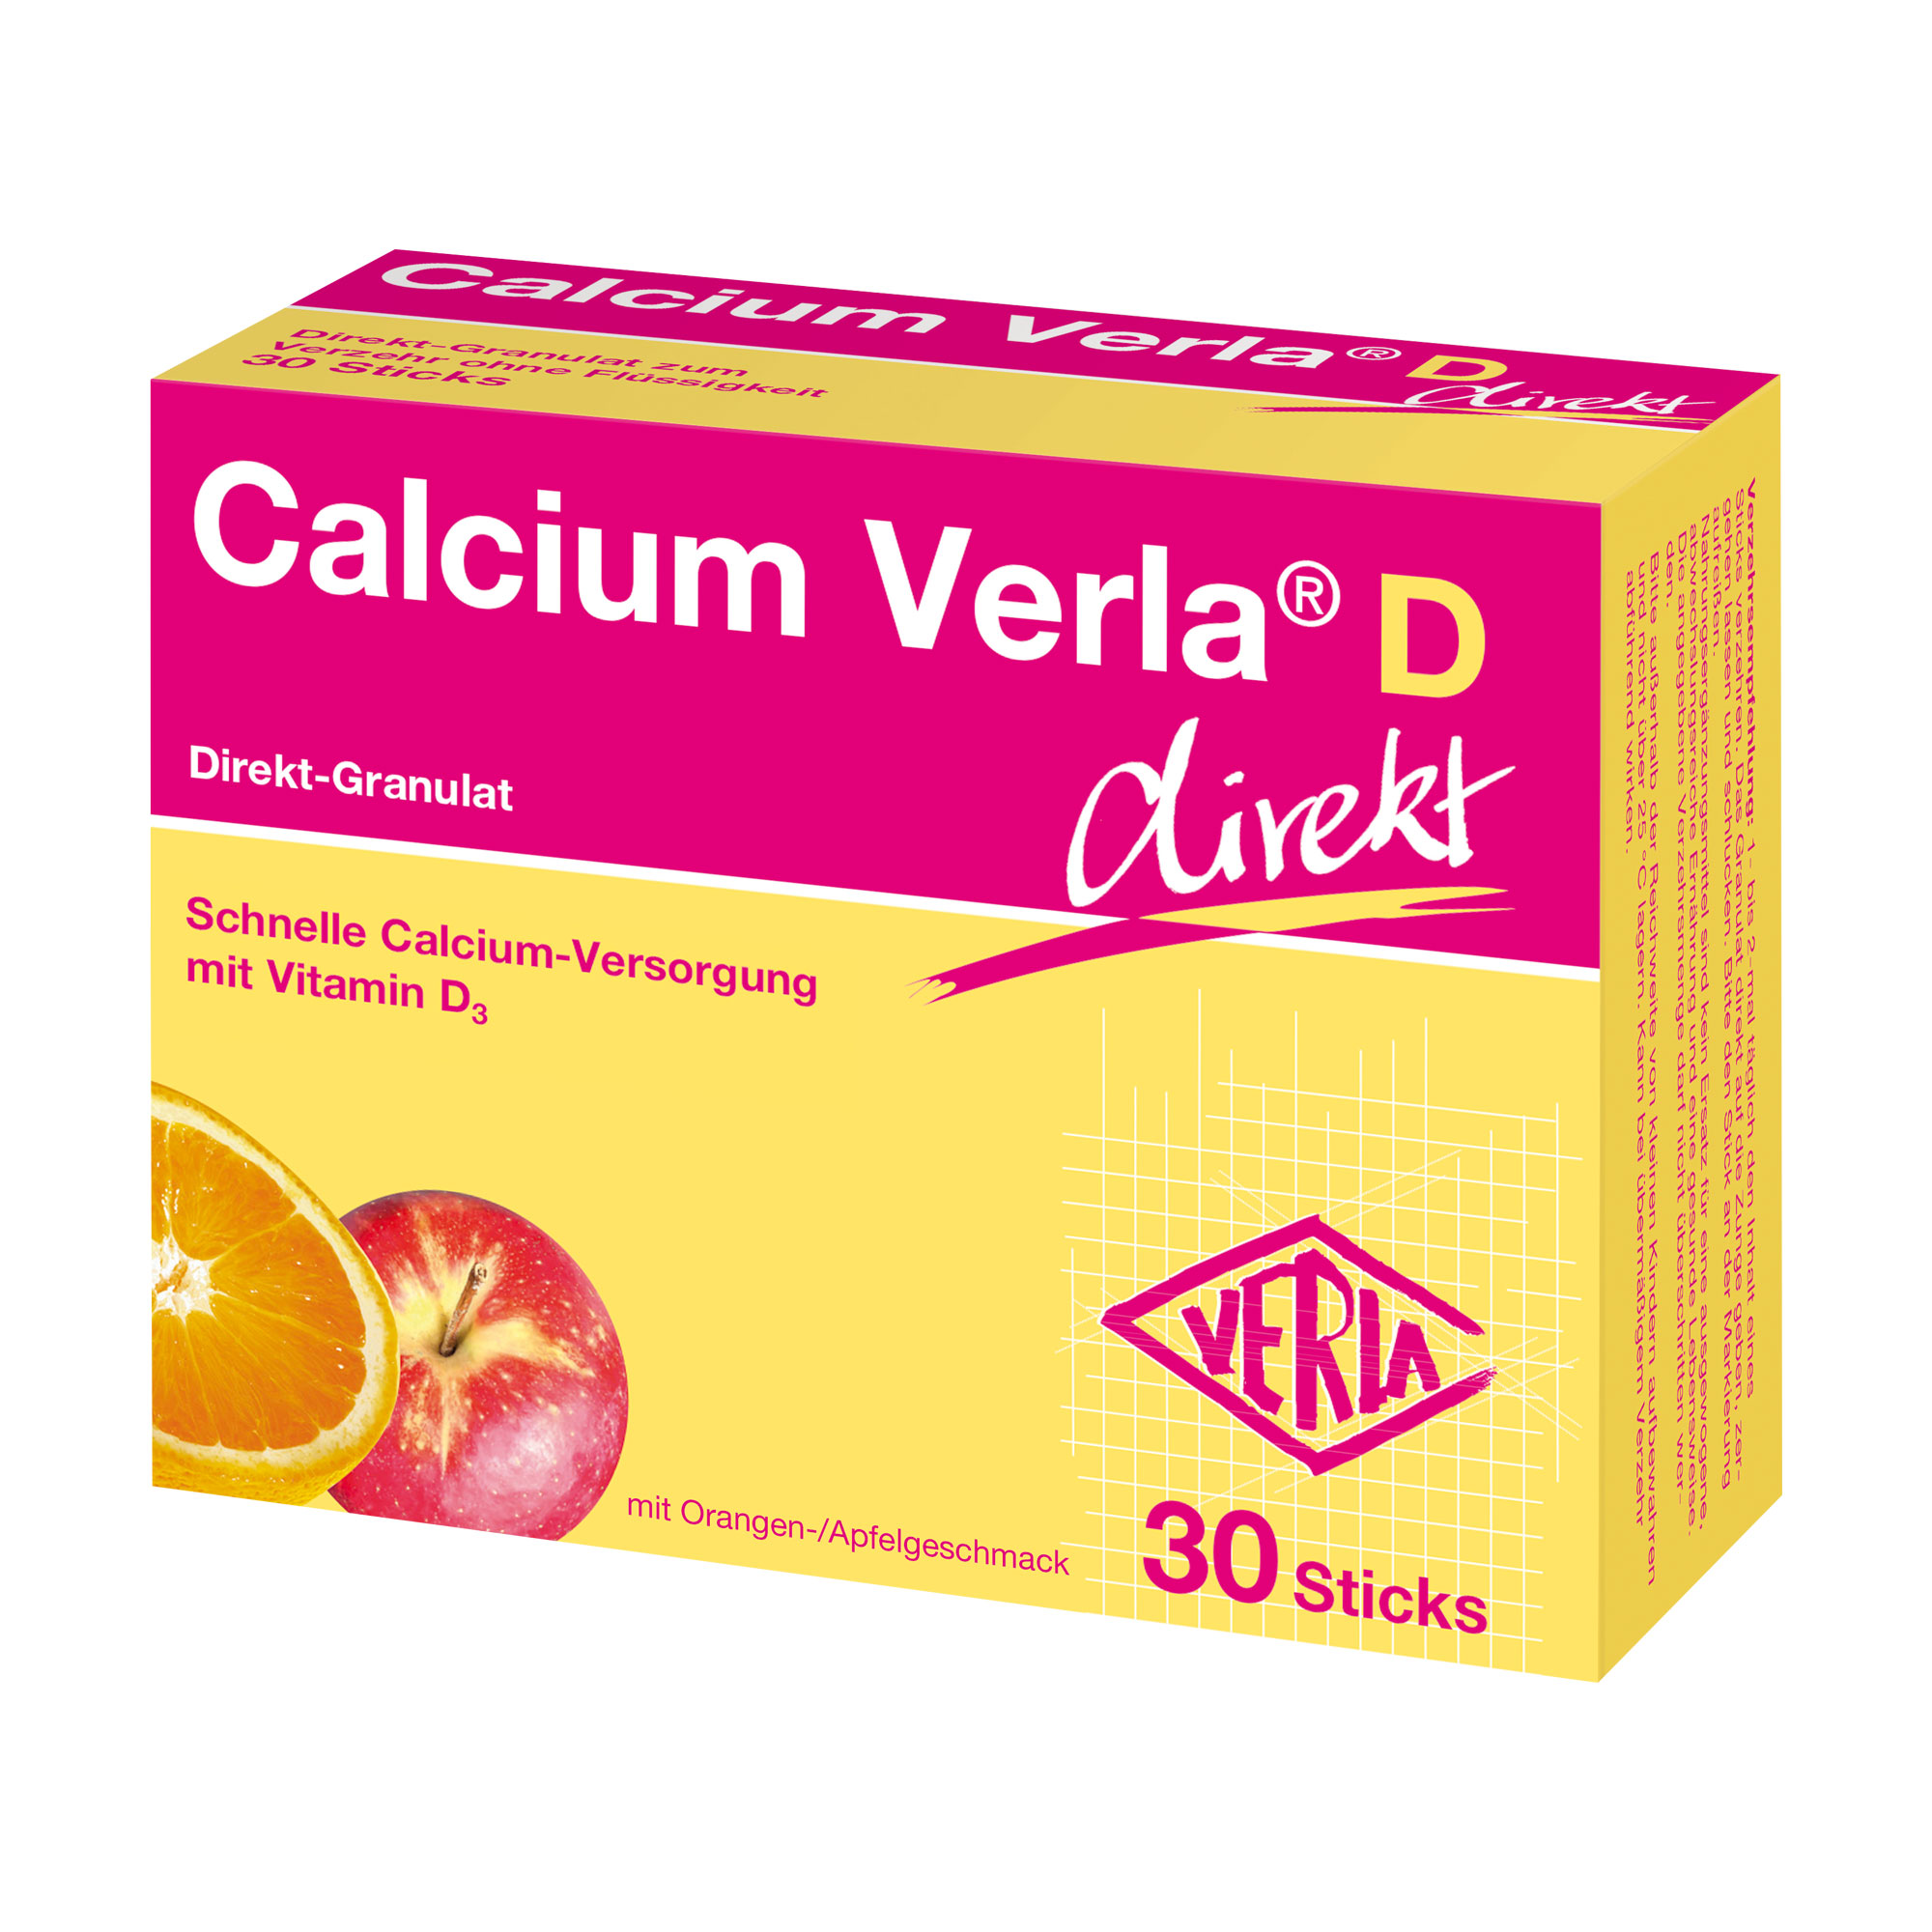 Schnelle Calcium-Versorgung mit Vitamin D3. Mit Orange-Apfel-Geschmack.